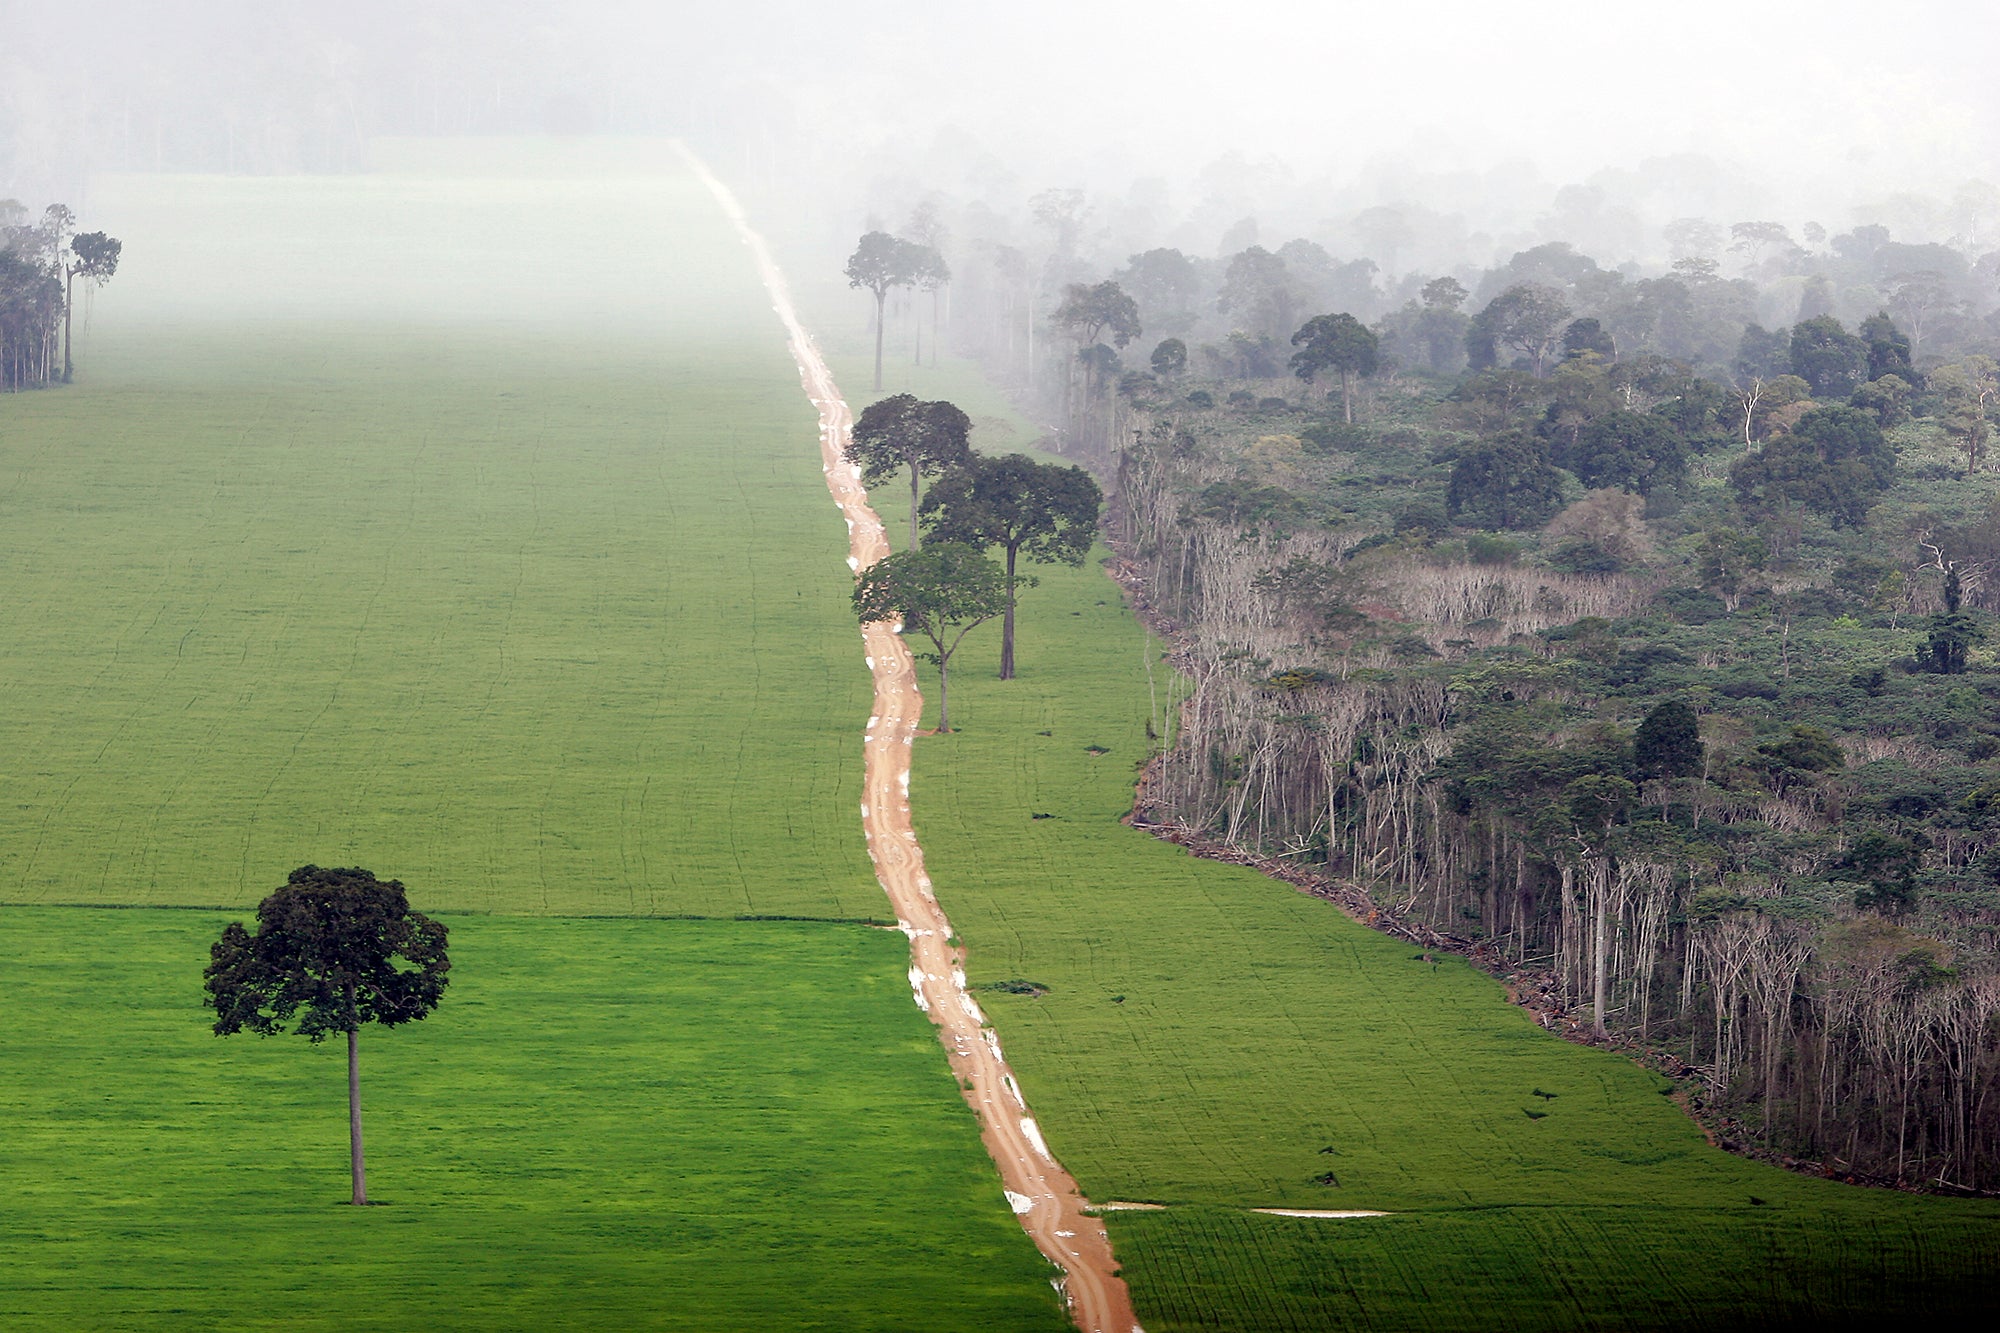 An open field of crops next to a rainforest.